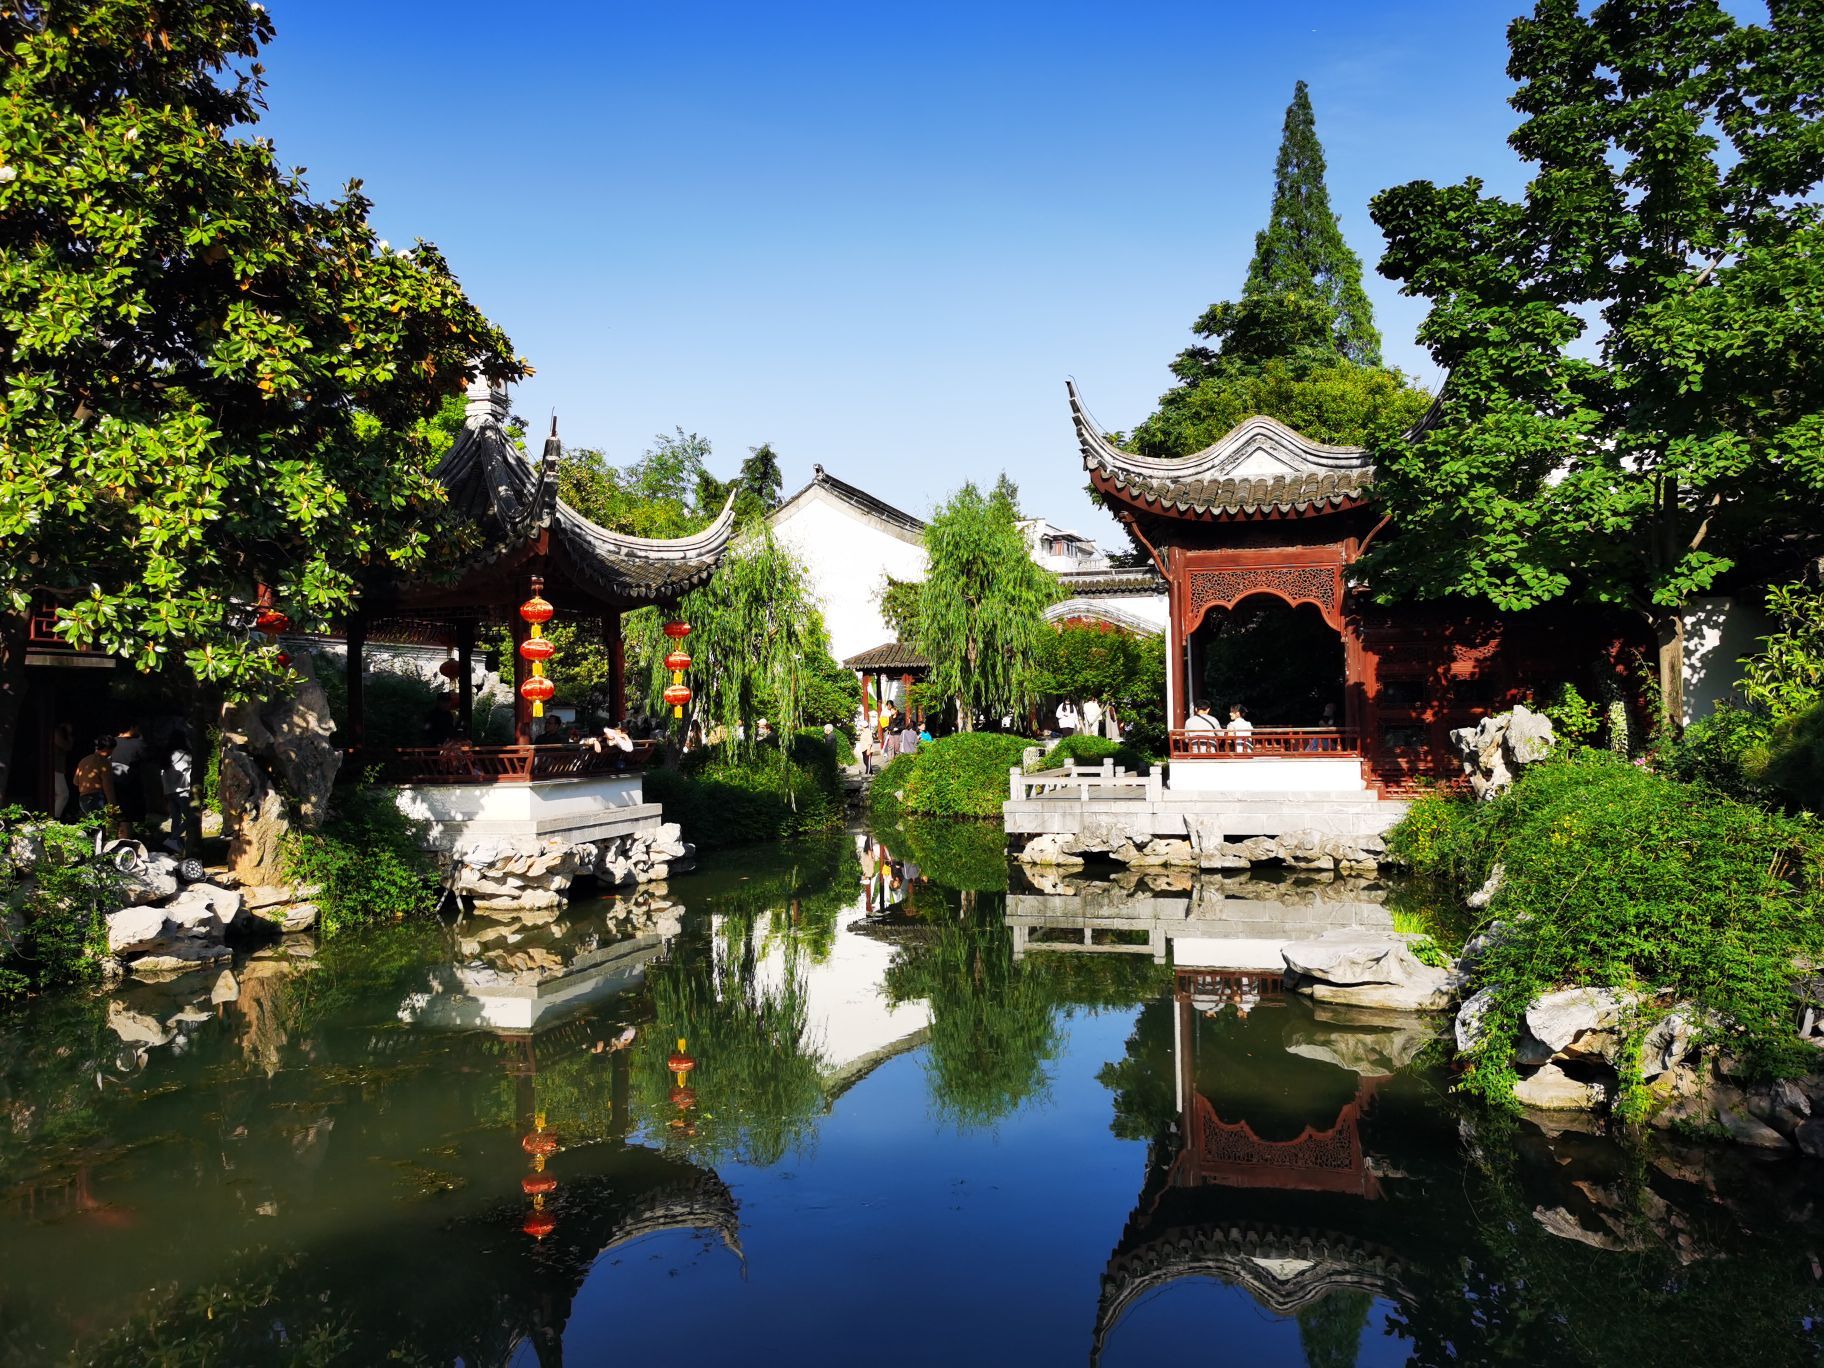 Khu vườn cổ 600 năm trường tồn cùng tuế nguyệt, cảnh sắc 4 mùa đẹp vĩnh cửu giữa cố đô Nam Kinh - Ảnh 2.